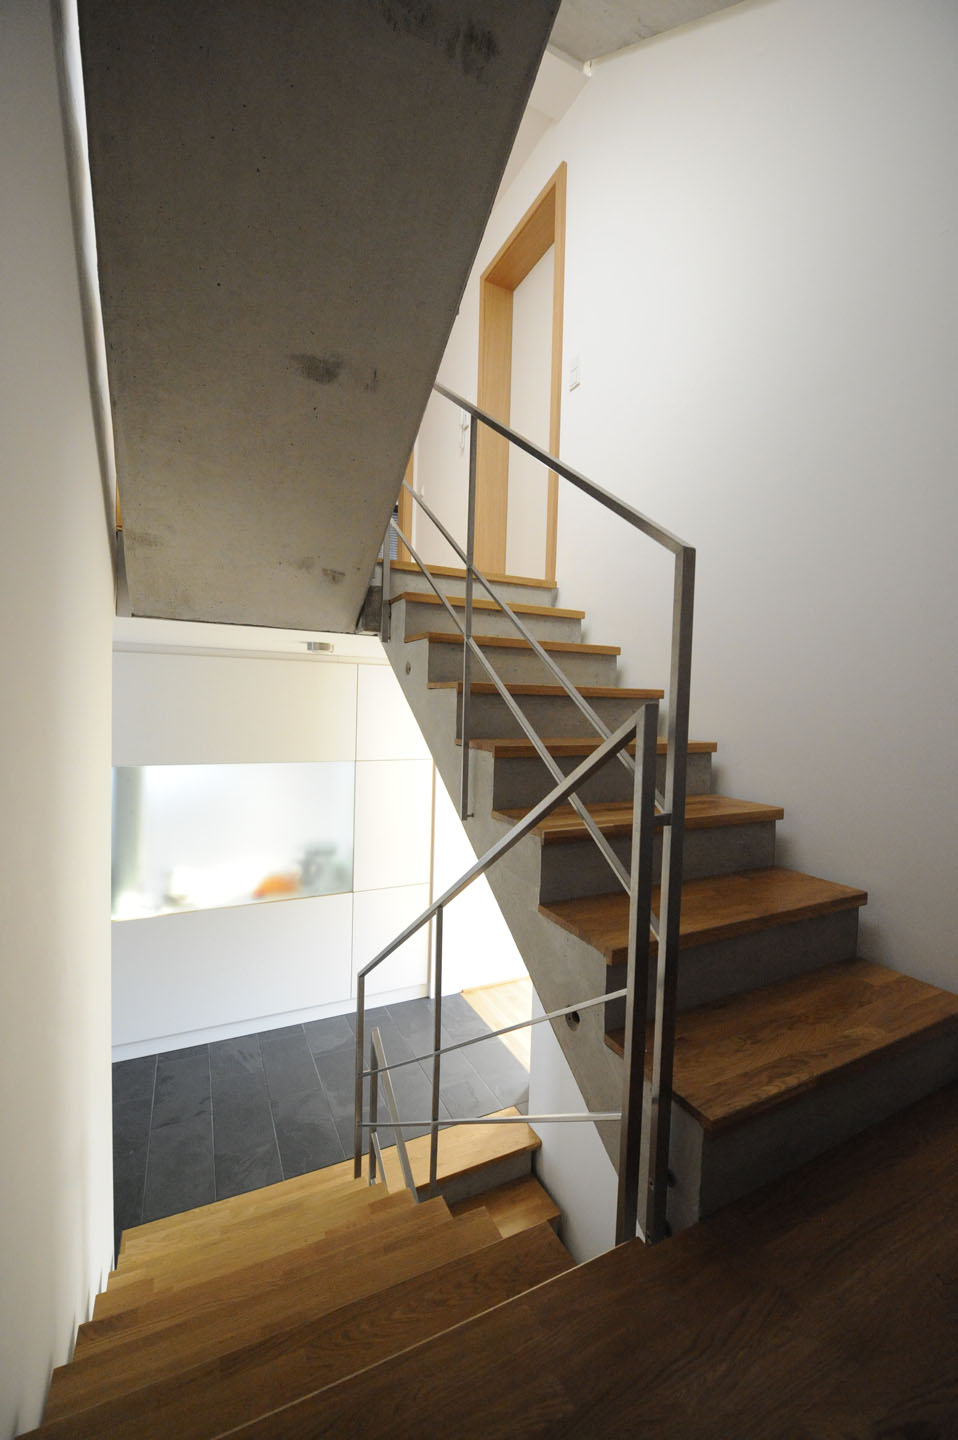 Beton-Treppe mit Edelstahl-Geländer und hochwertigem Parkett-Boden